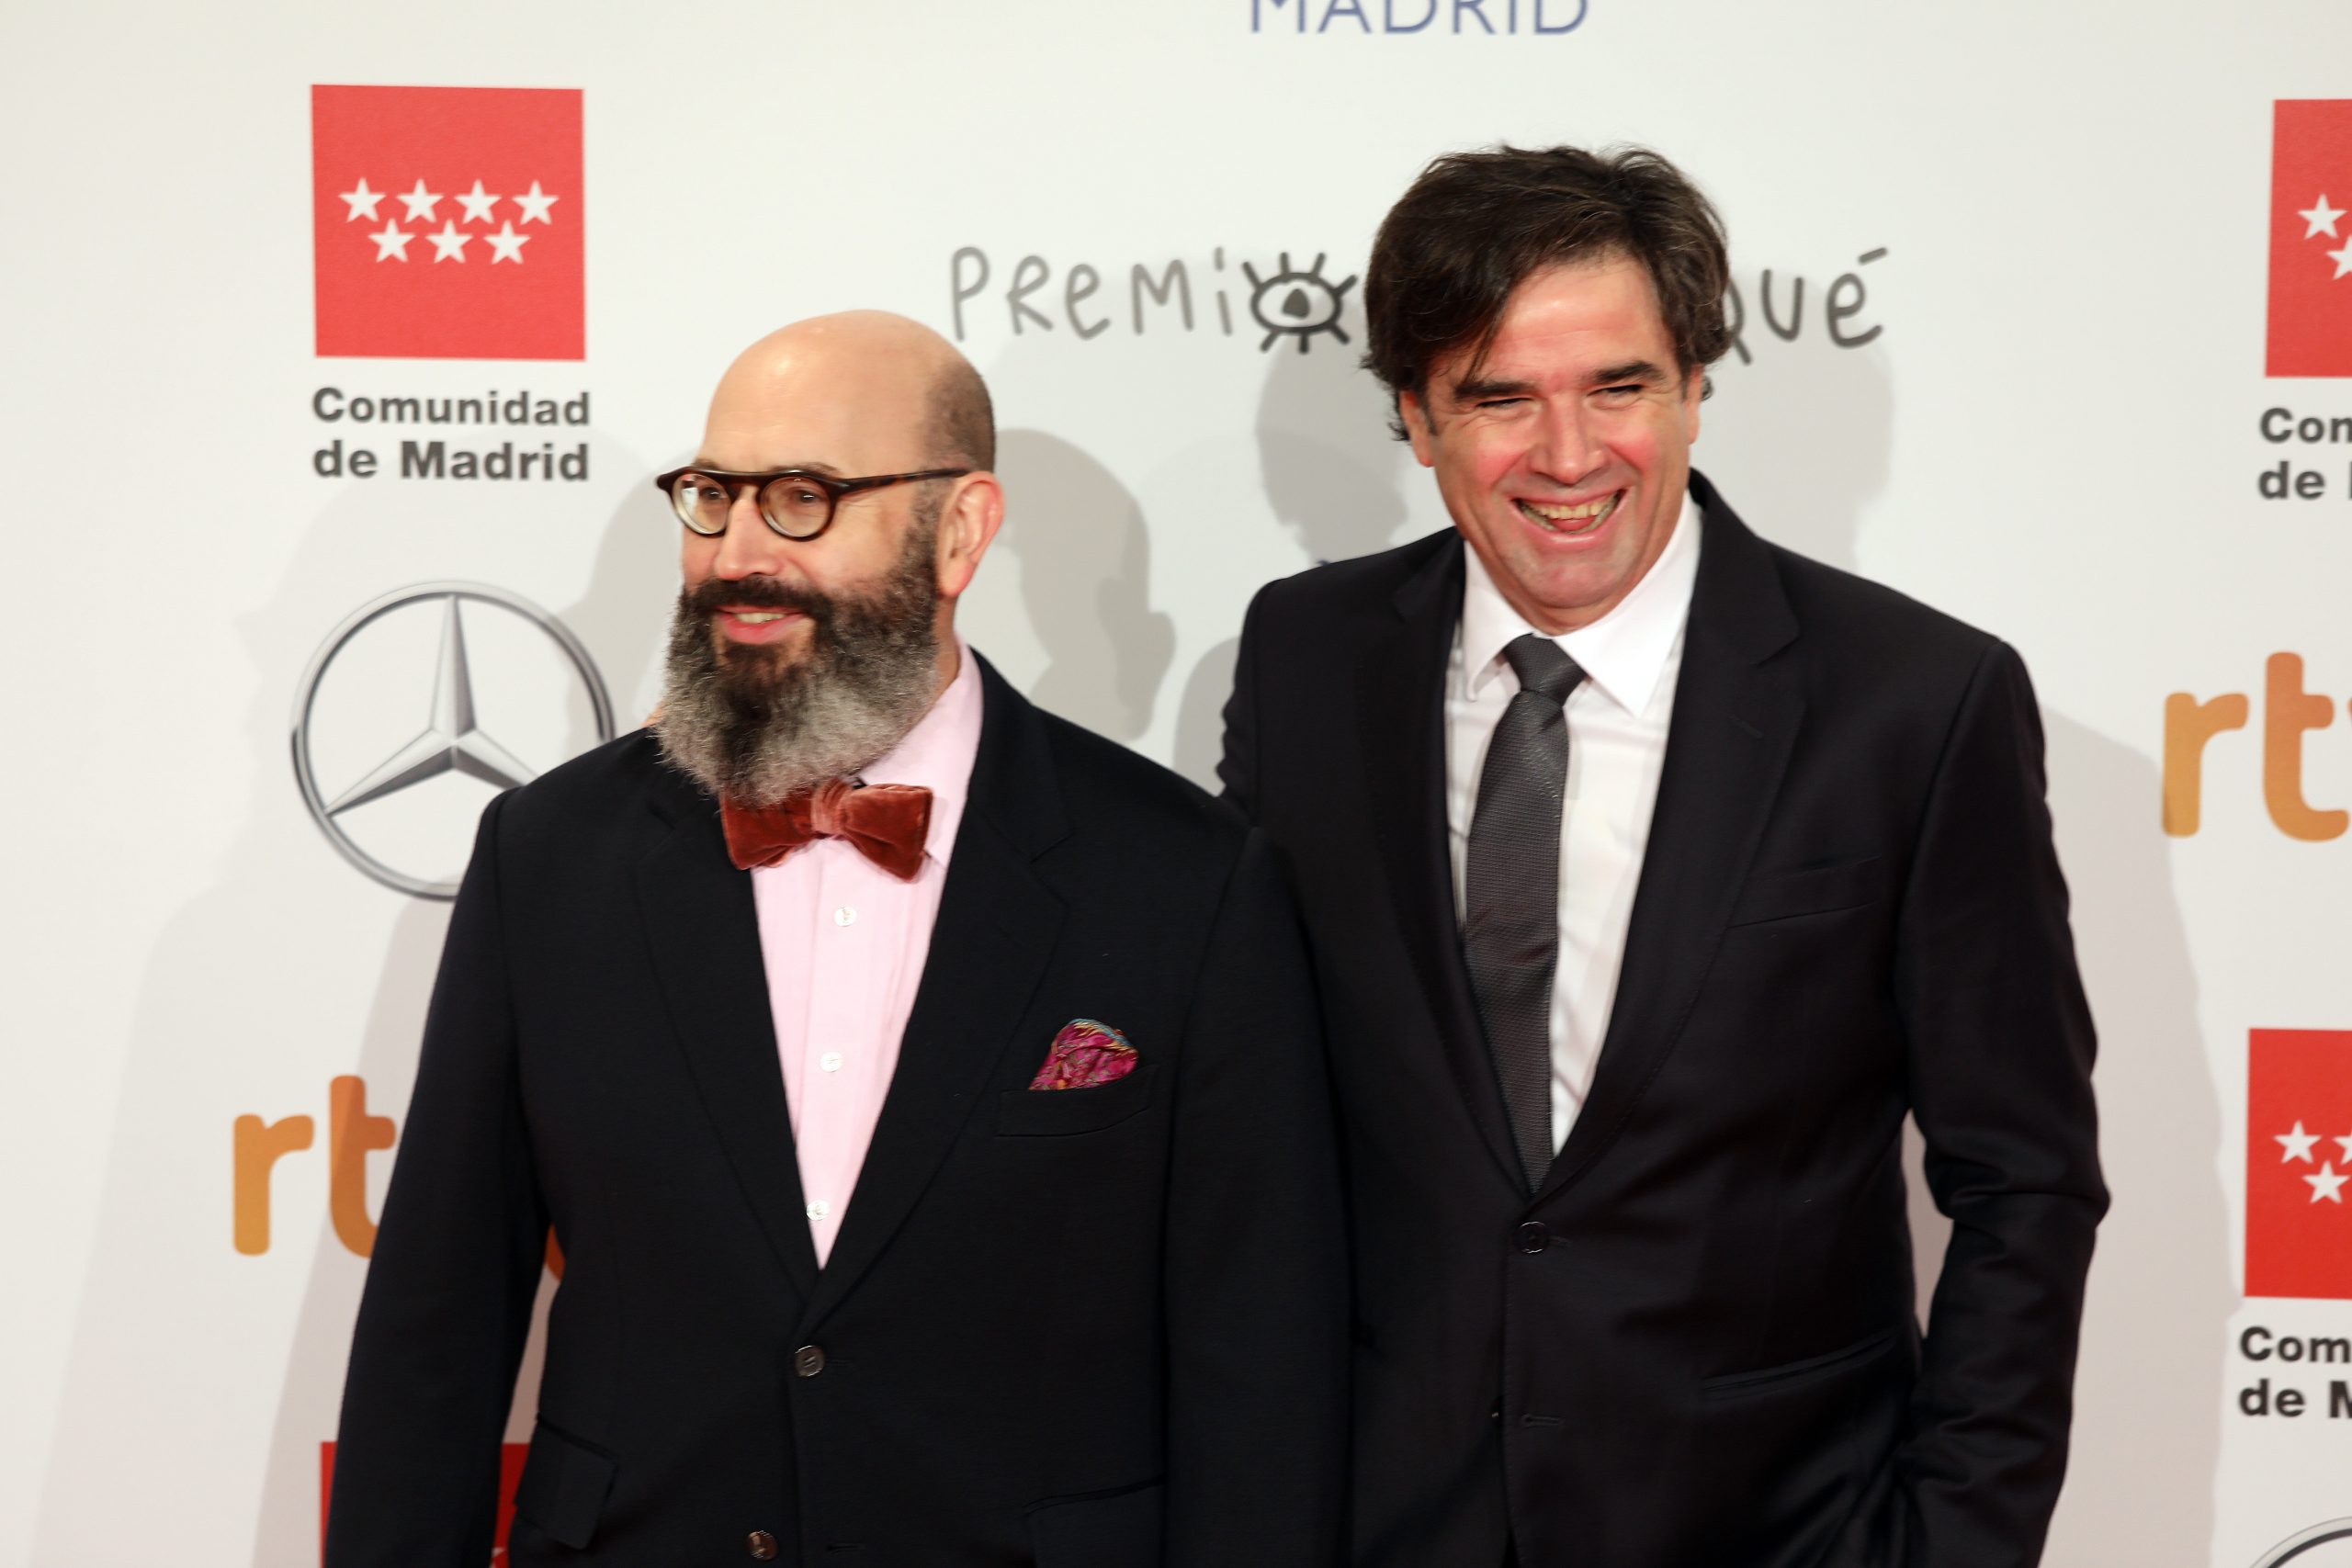 Premios Forqué: Los “giles” ganan mejor película latinoamericana